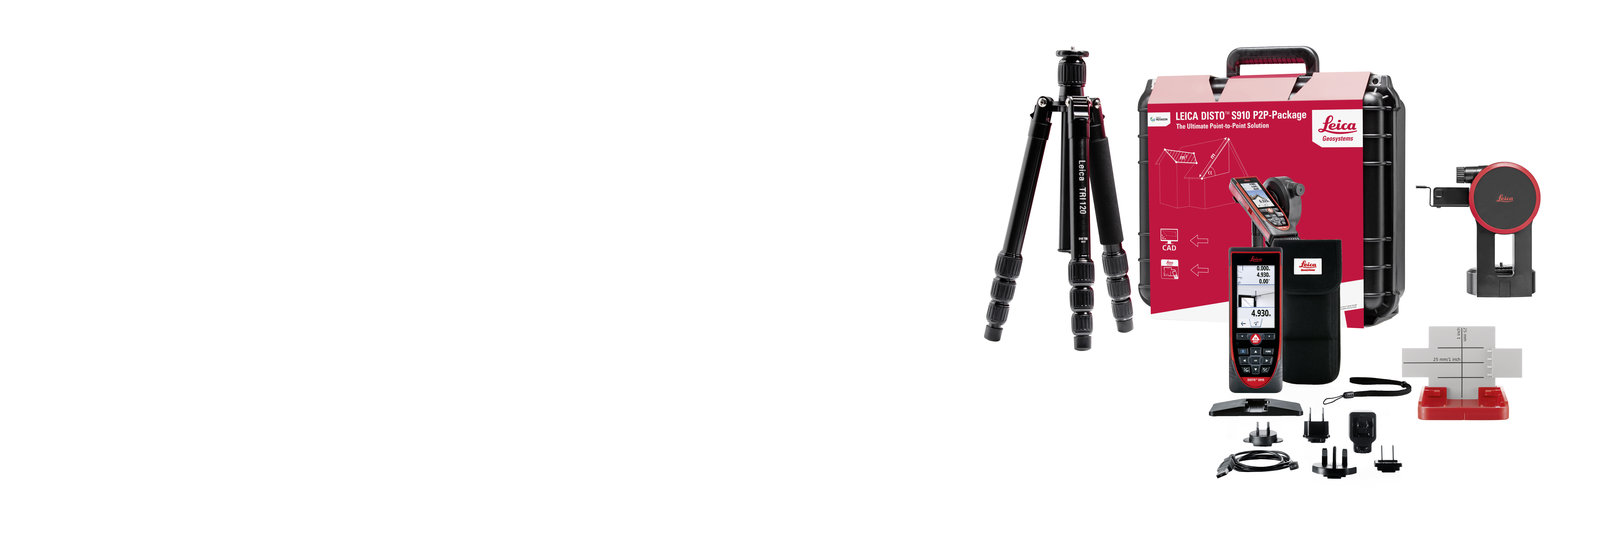 Leica DISTO S910 Pro Paket